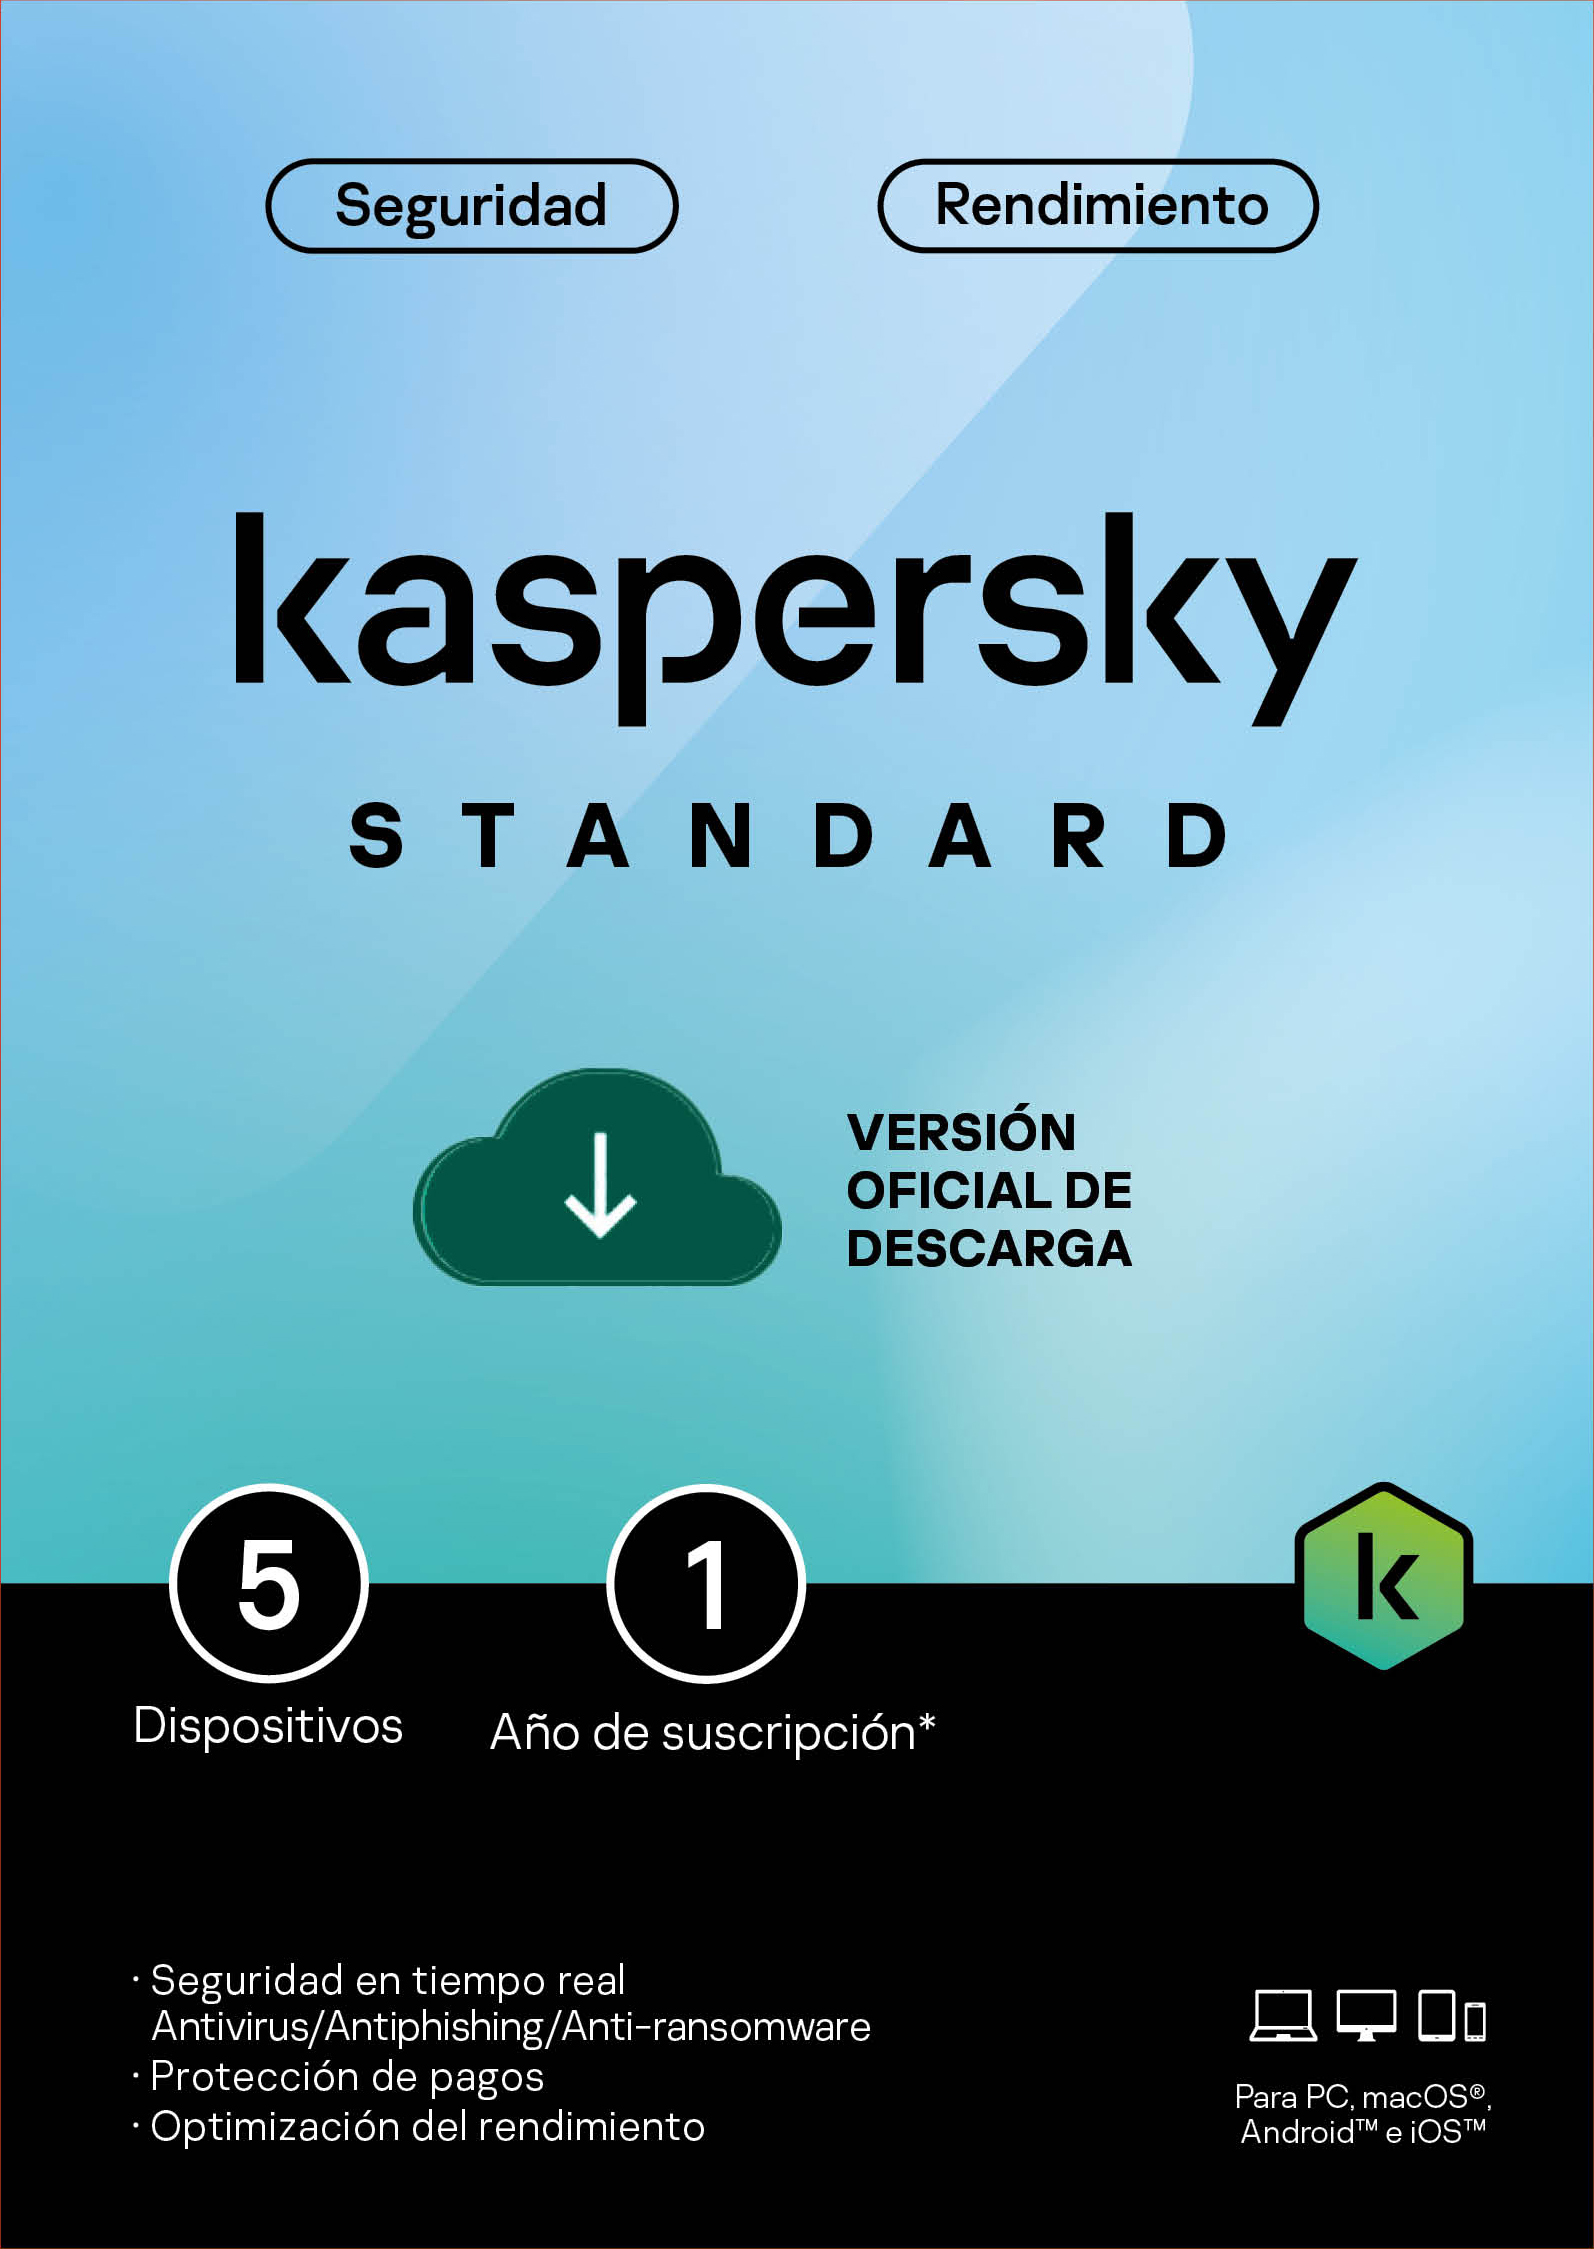 Licencia Kaspersky Standard 5 dispositivos por 1 año